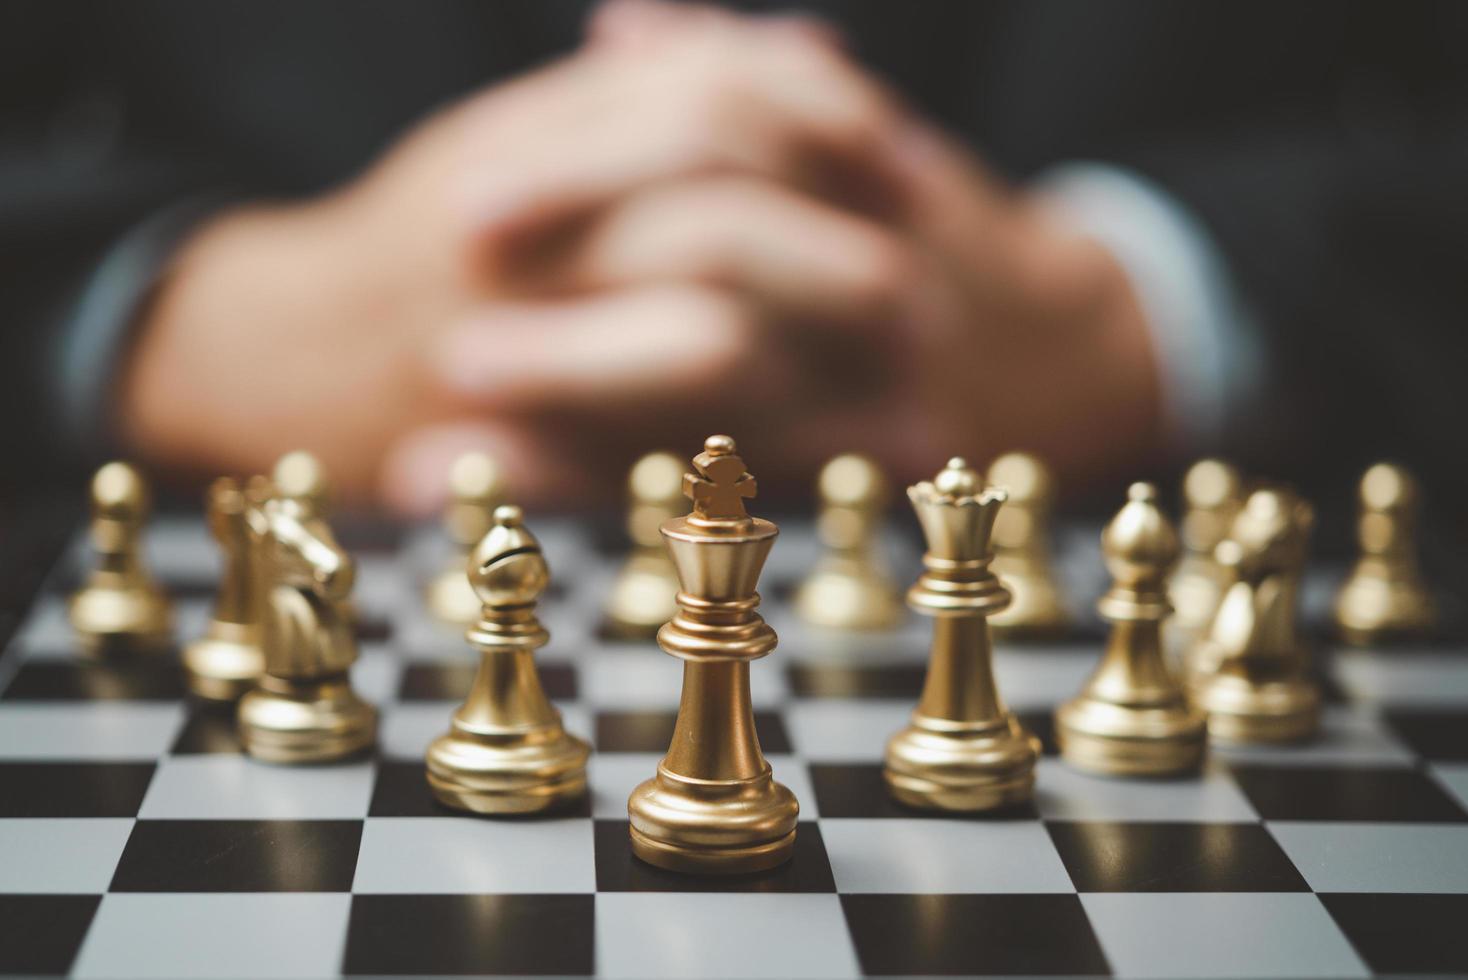 planification stratégique et idée d'entreprise de réussite des objectifs. homme d'affaires regardant les échecs au tableau. photo